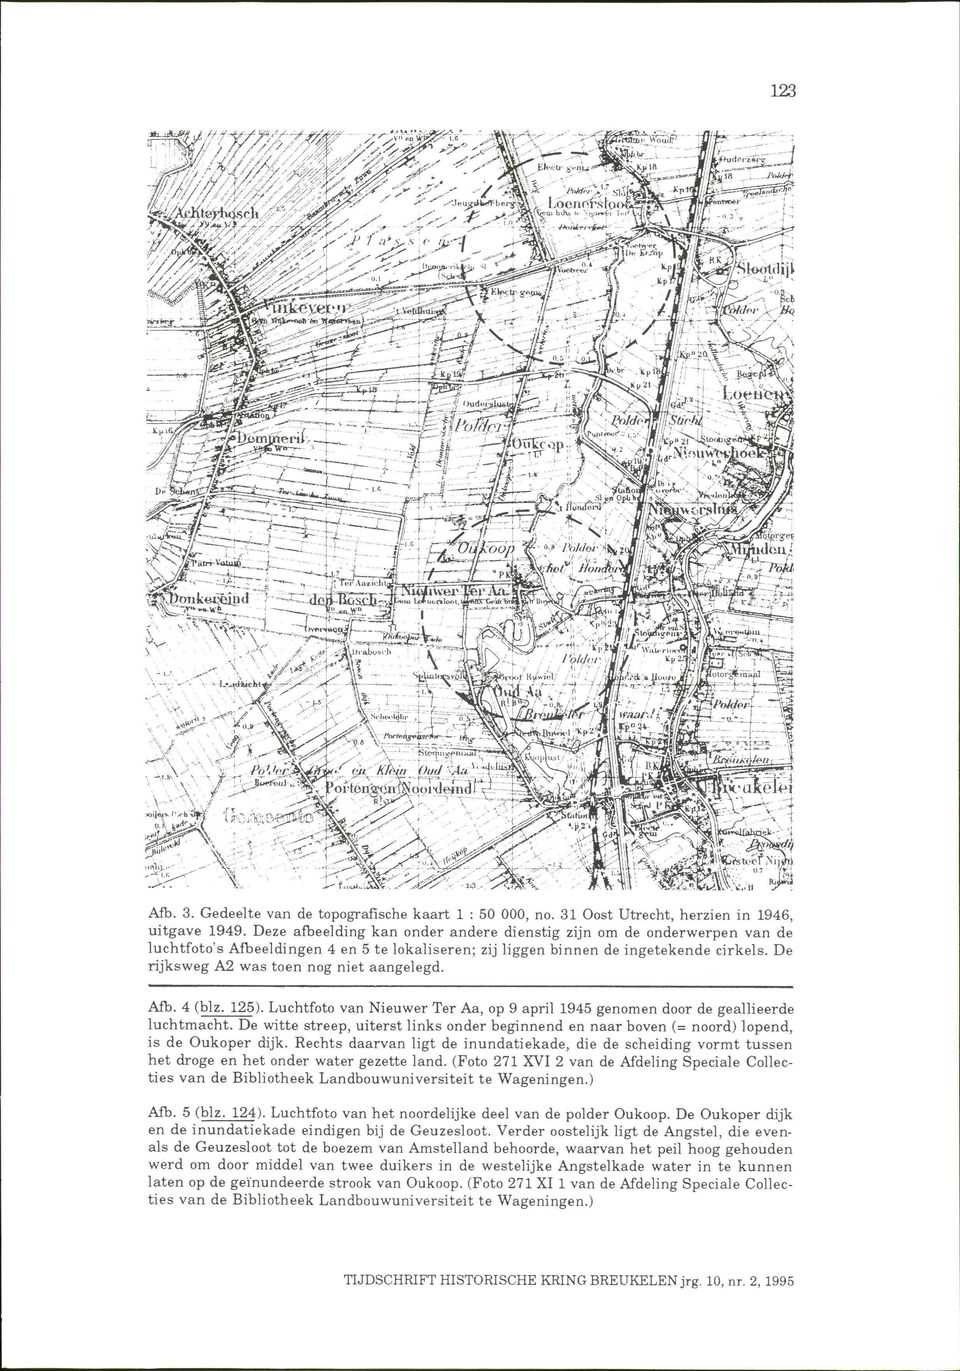 De rijksweg A2 was toen nog niet aangelegd. Afb. 4 (blz. 125). Luchtfoto van Nieuwer Ter Aa, op 9 april 1945 genomen door de geallieerde luchtmacht.